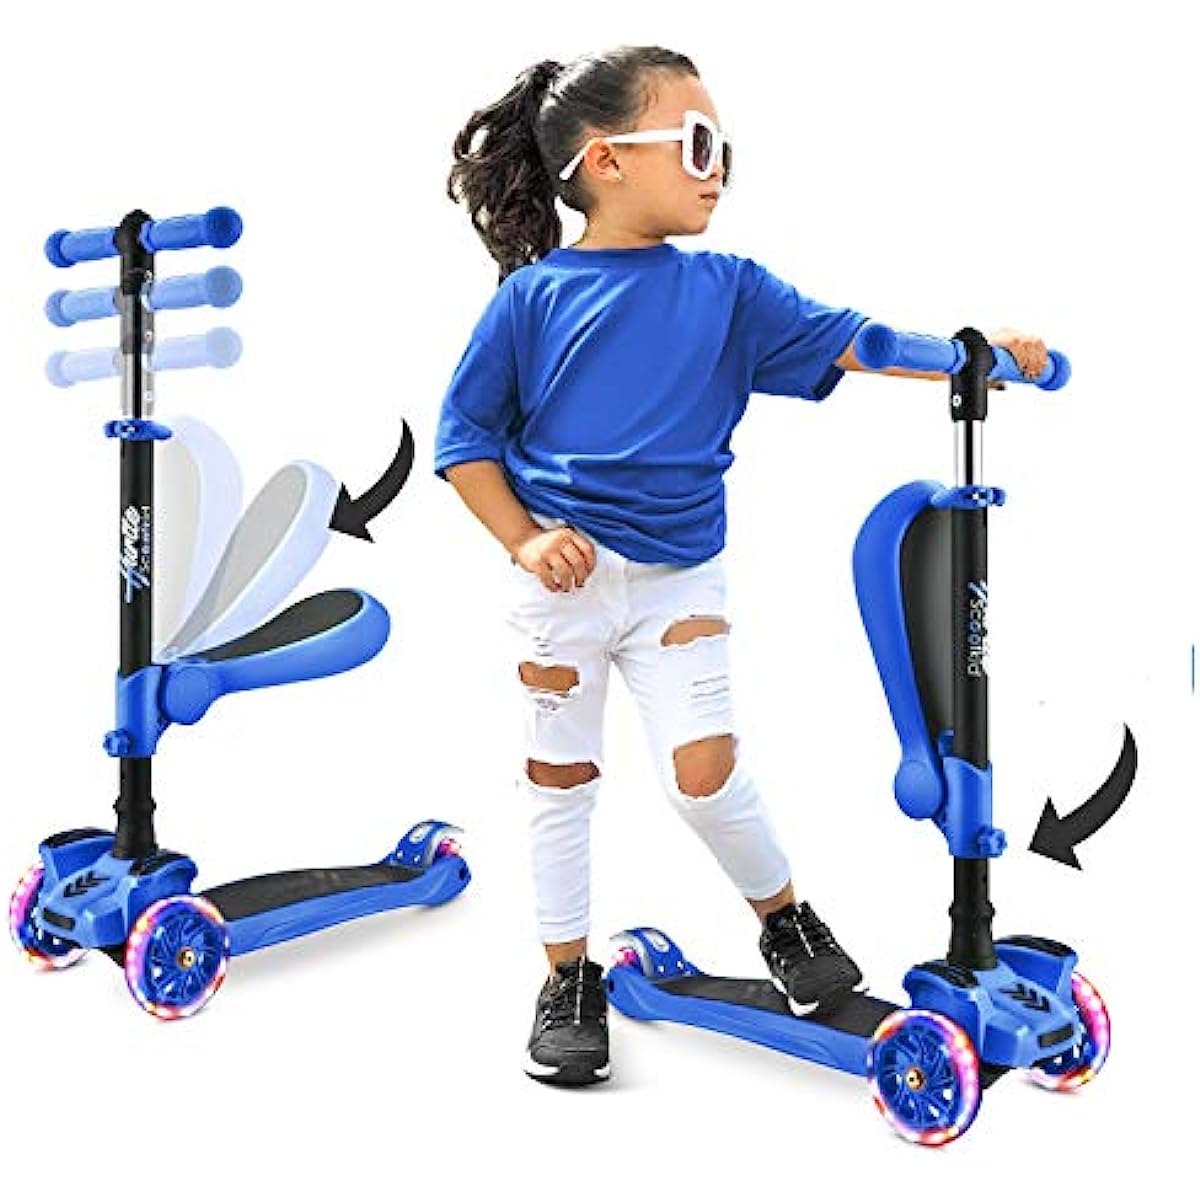 Scooter de 3 rodas para suporte de crianças / patinetes dobráveis de brinquedo para crianças com altura ajustável plataforma antiderrapante luzes de roda intermitentes para meninos / meninas de 2 a 12 anos